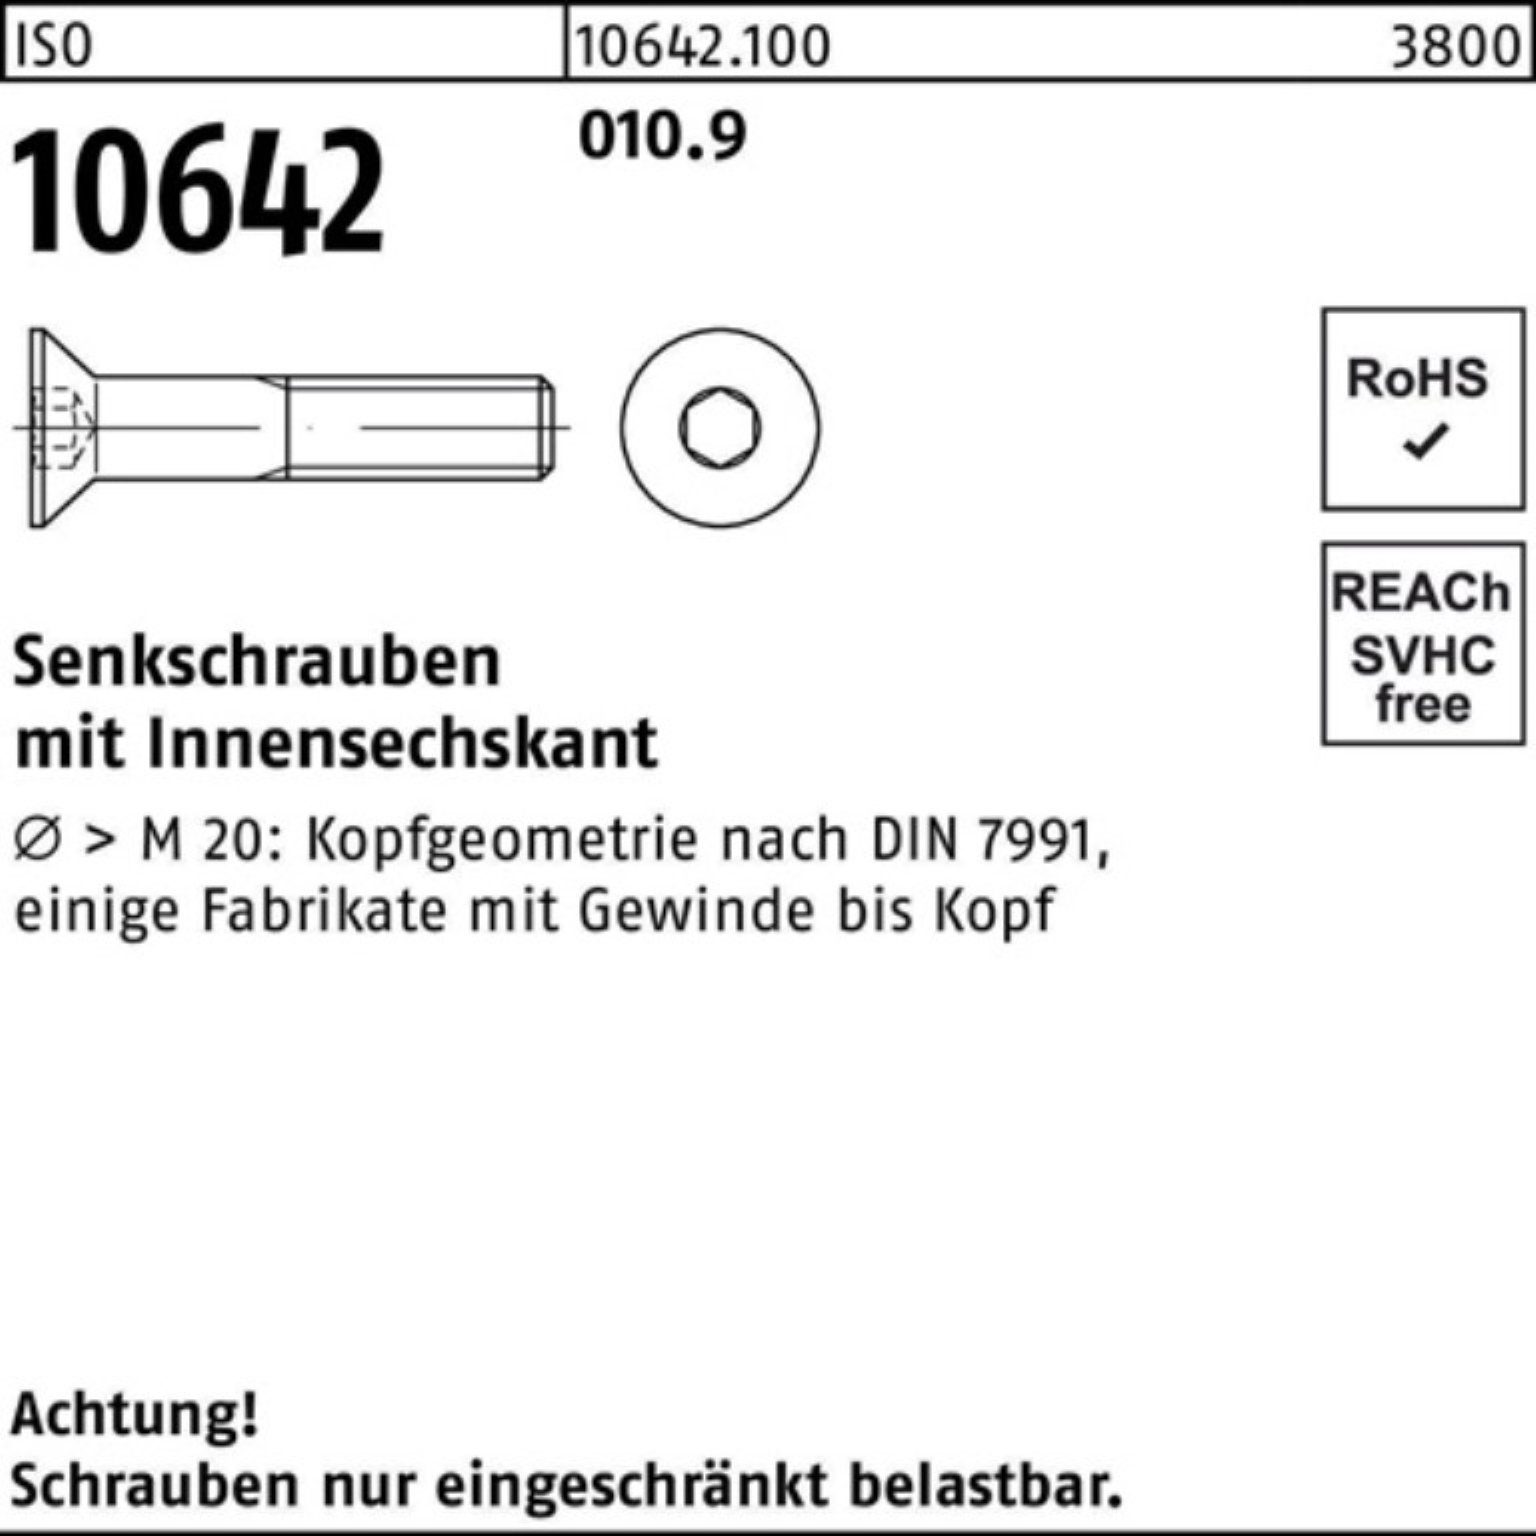 500 Reyher Senkschraube M4x Pack 10642 010.9 Senkschraube ISO Stück Innen-6kt IS 35 500er